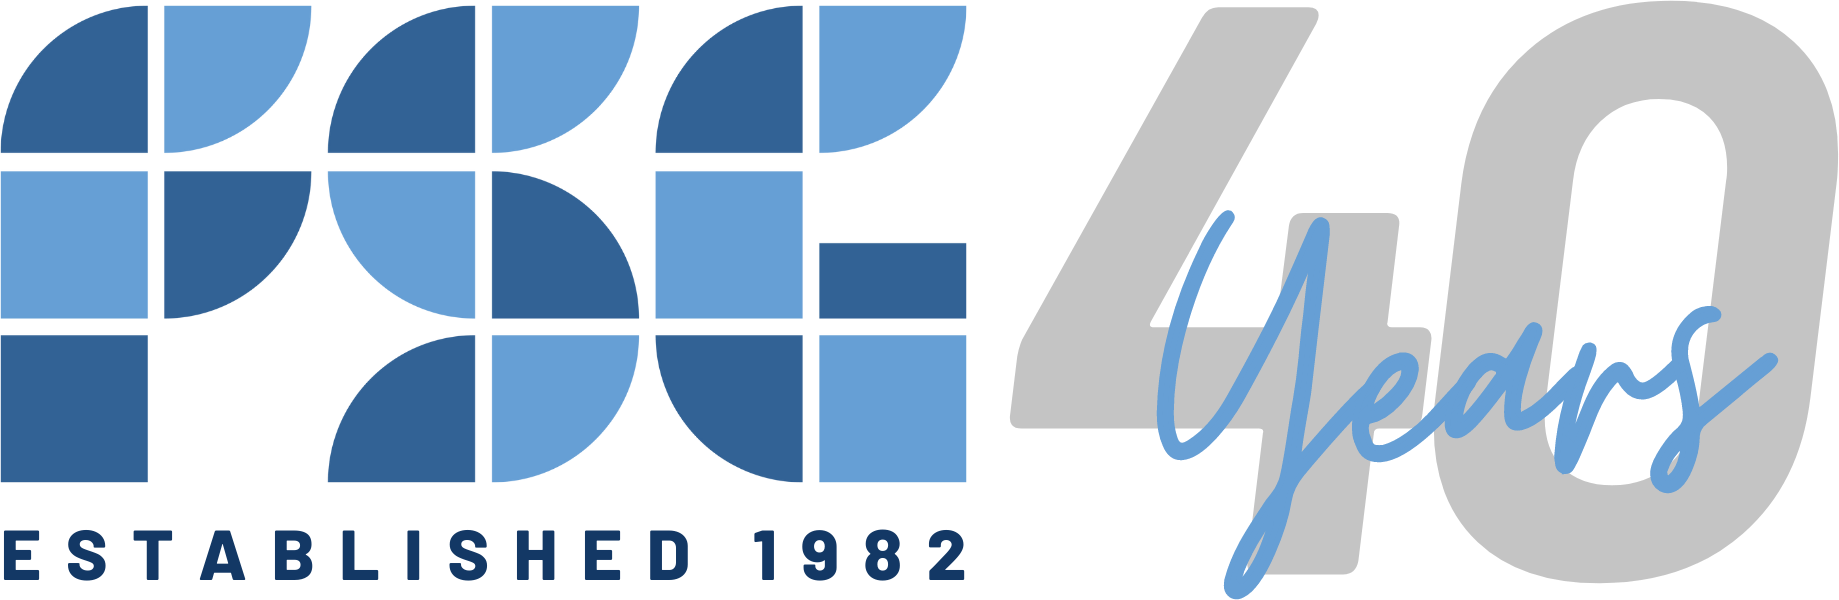 40 Year Logos